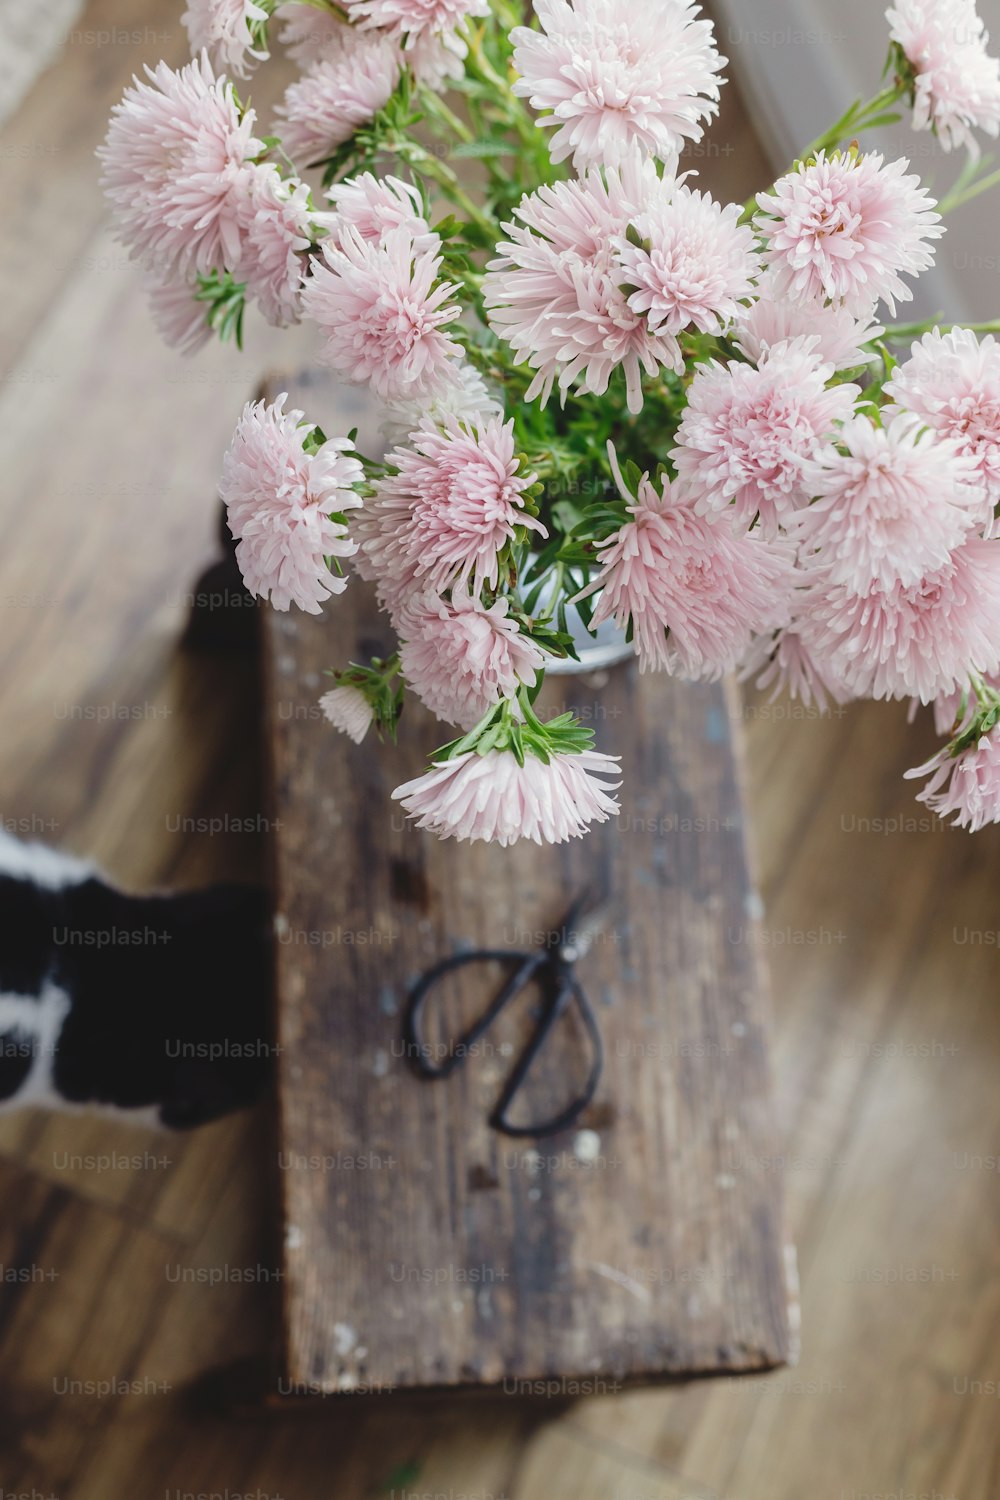 Bellissimi fiori autunnali, forbici e simpatici gatti su sfondo rustico in legno. Vista dall'alto. Fiori di astri rosa e animale domestico, decorazione per le vacanze autunnali in casa di campagna. Autunno accogliente